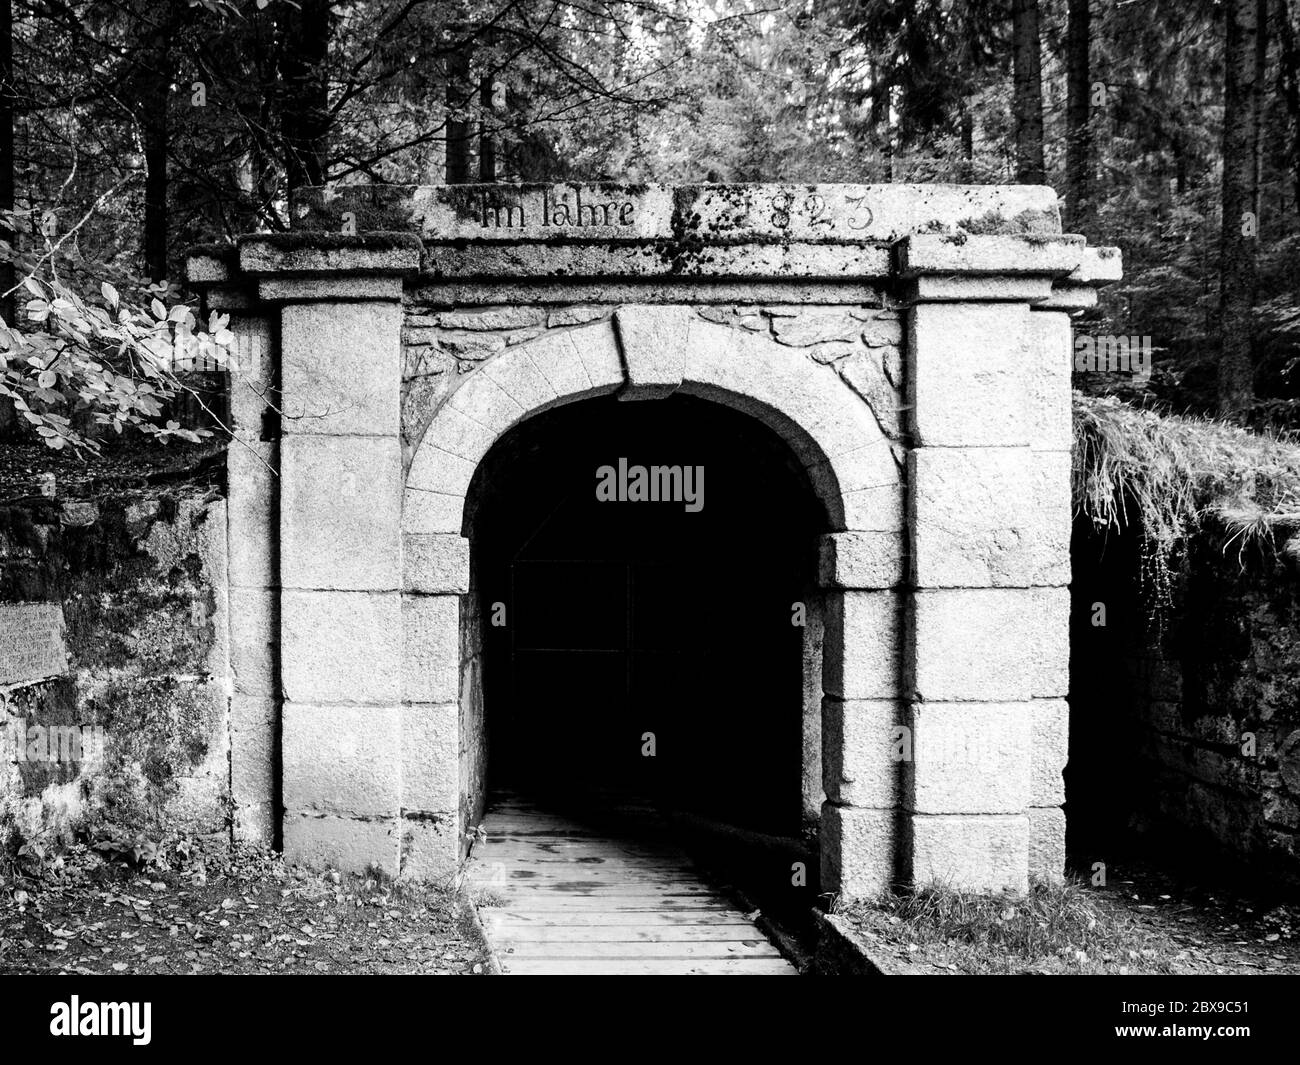 Ingresso inferiore al tunnel dello storico canale di navigazione Schwarzenberg, montagne Sumava, Repubblica Ceca. Immagine in bianco e nero. Foto Stock